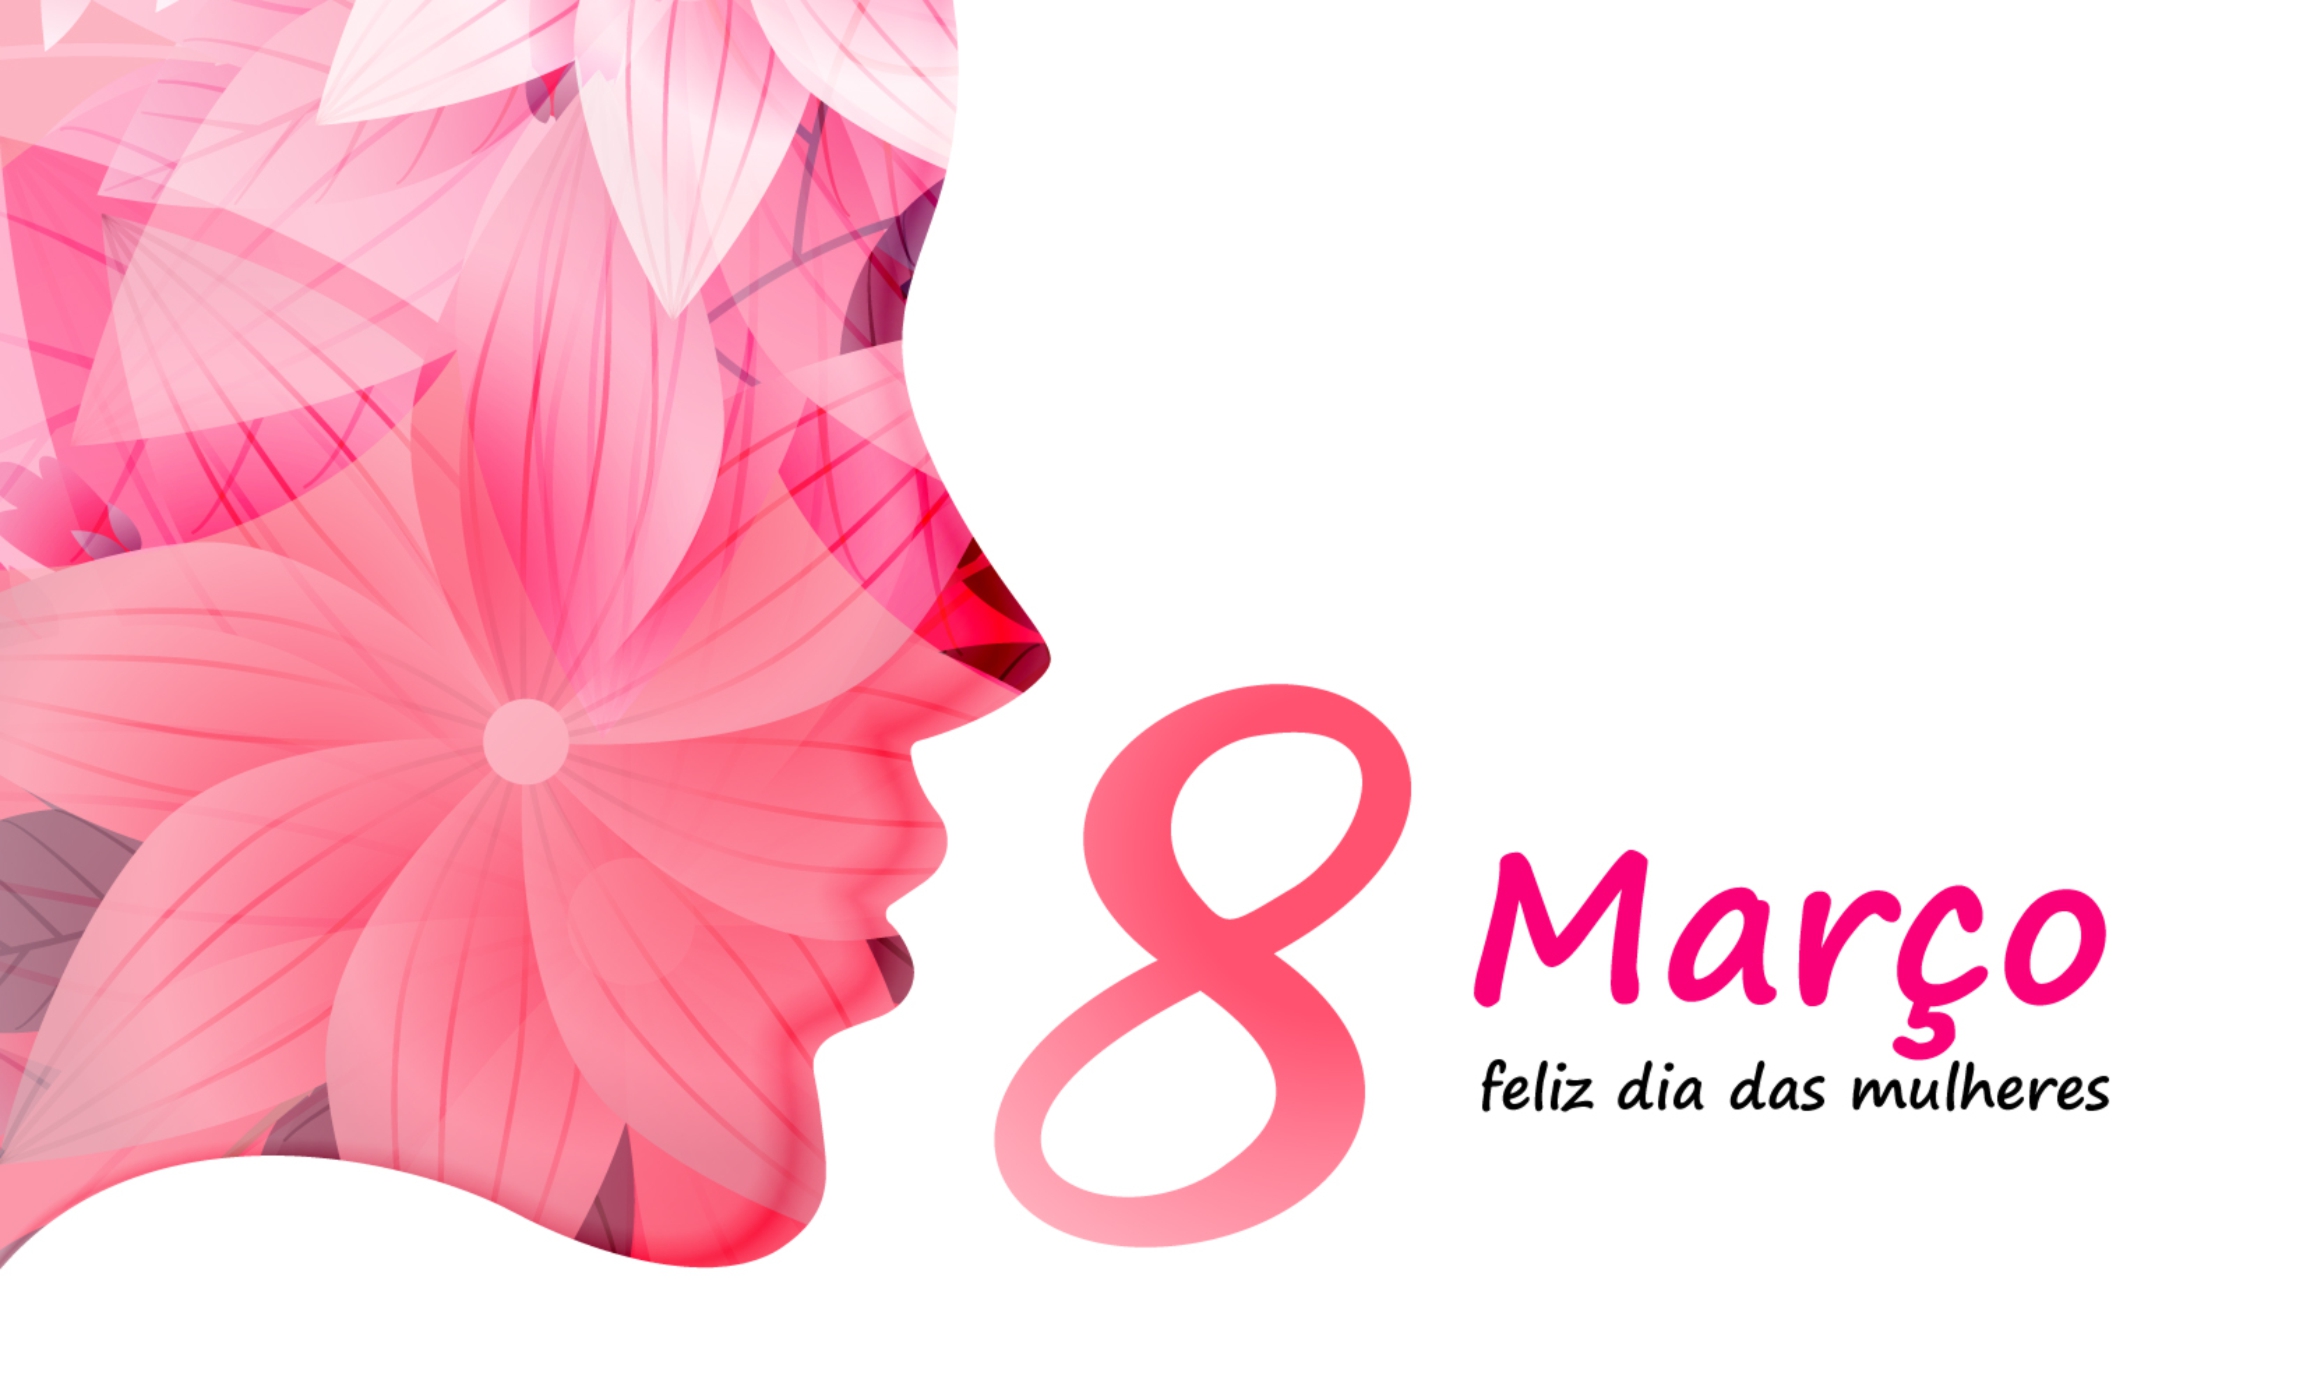 Homenagem ao “Dia da Mulher”